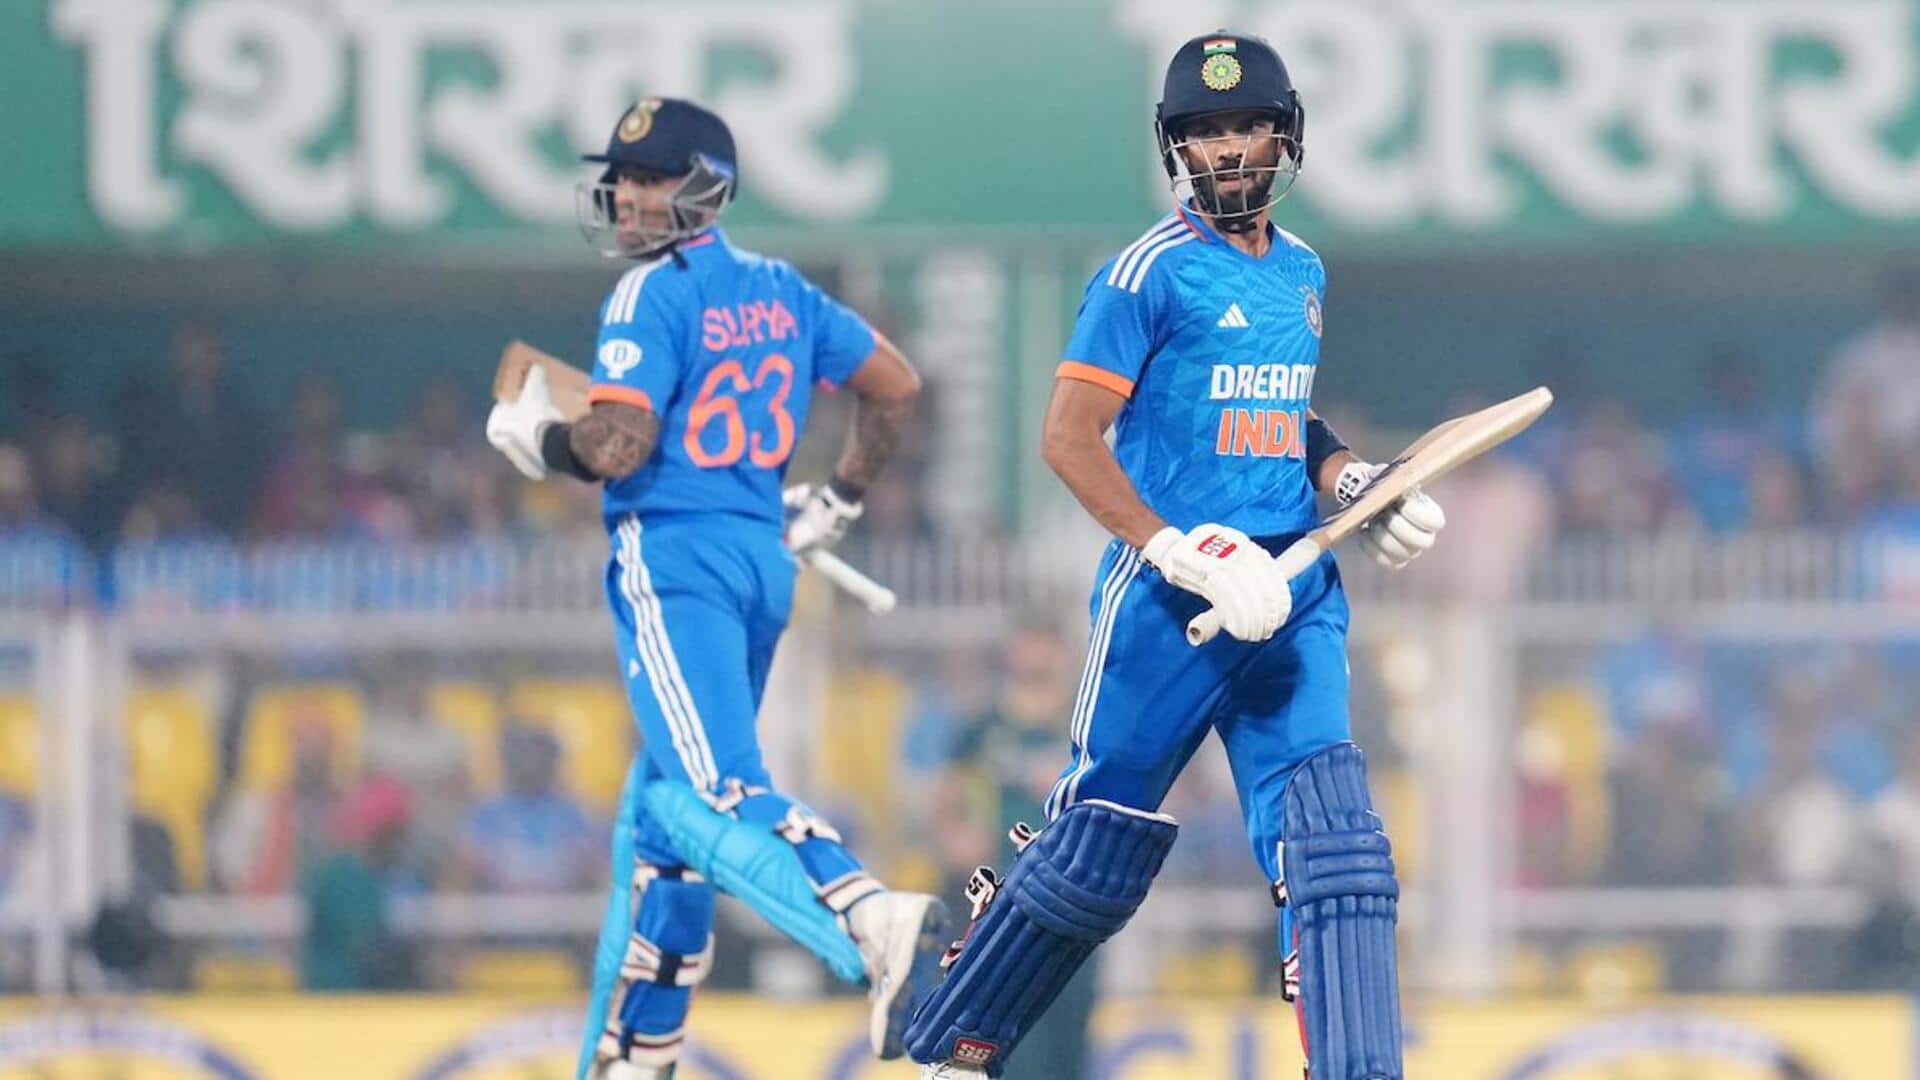 रुतुराज गायकवाड़ टी-20 अंतरराष्ट्रीय के 1 ओवर में दूसरे सर्वाधिक रन बनाने वाले भारतीय बल्लेबाज बने